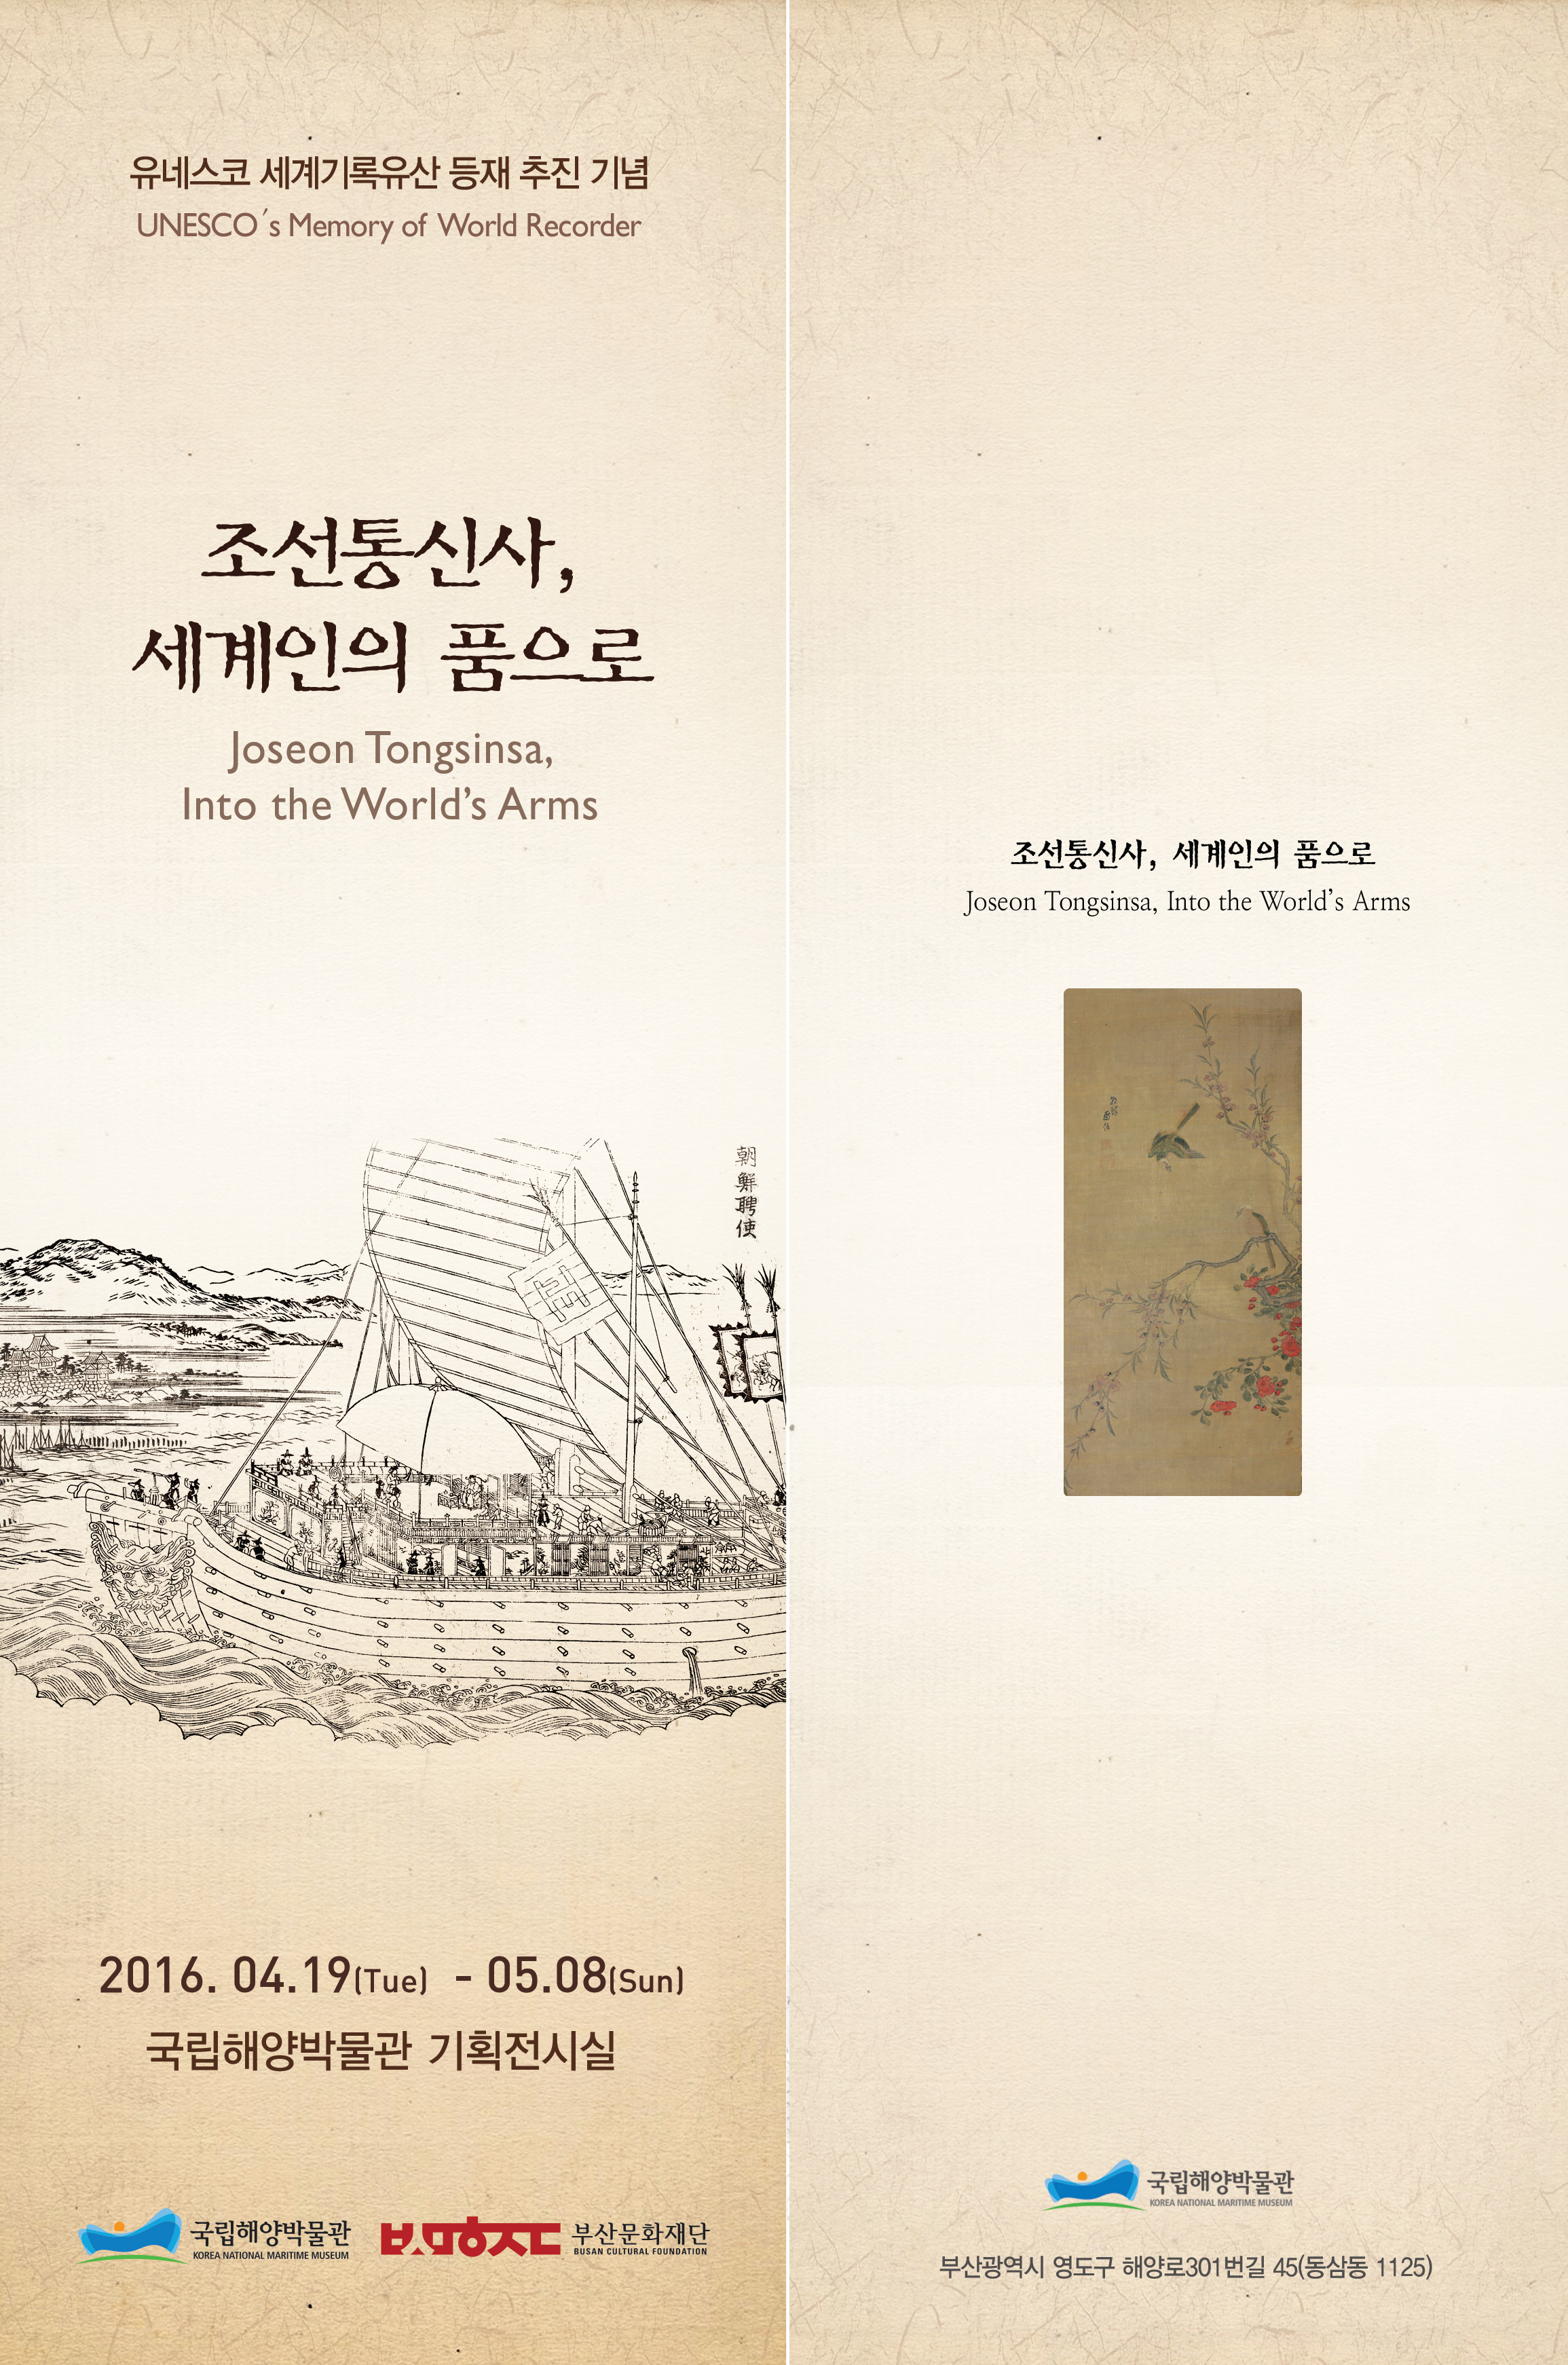 유네스코 세계기록유산 등재 추진 기념 UNESCO's Memory of World Recorder. 조선통신사, 세계인의 품으로 Joseon Tongsinsa, Into the World's Arms. 전시 리플렛. 아래에 내용이 이어집니다.